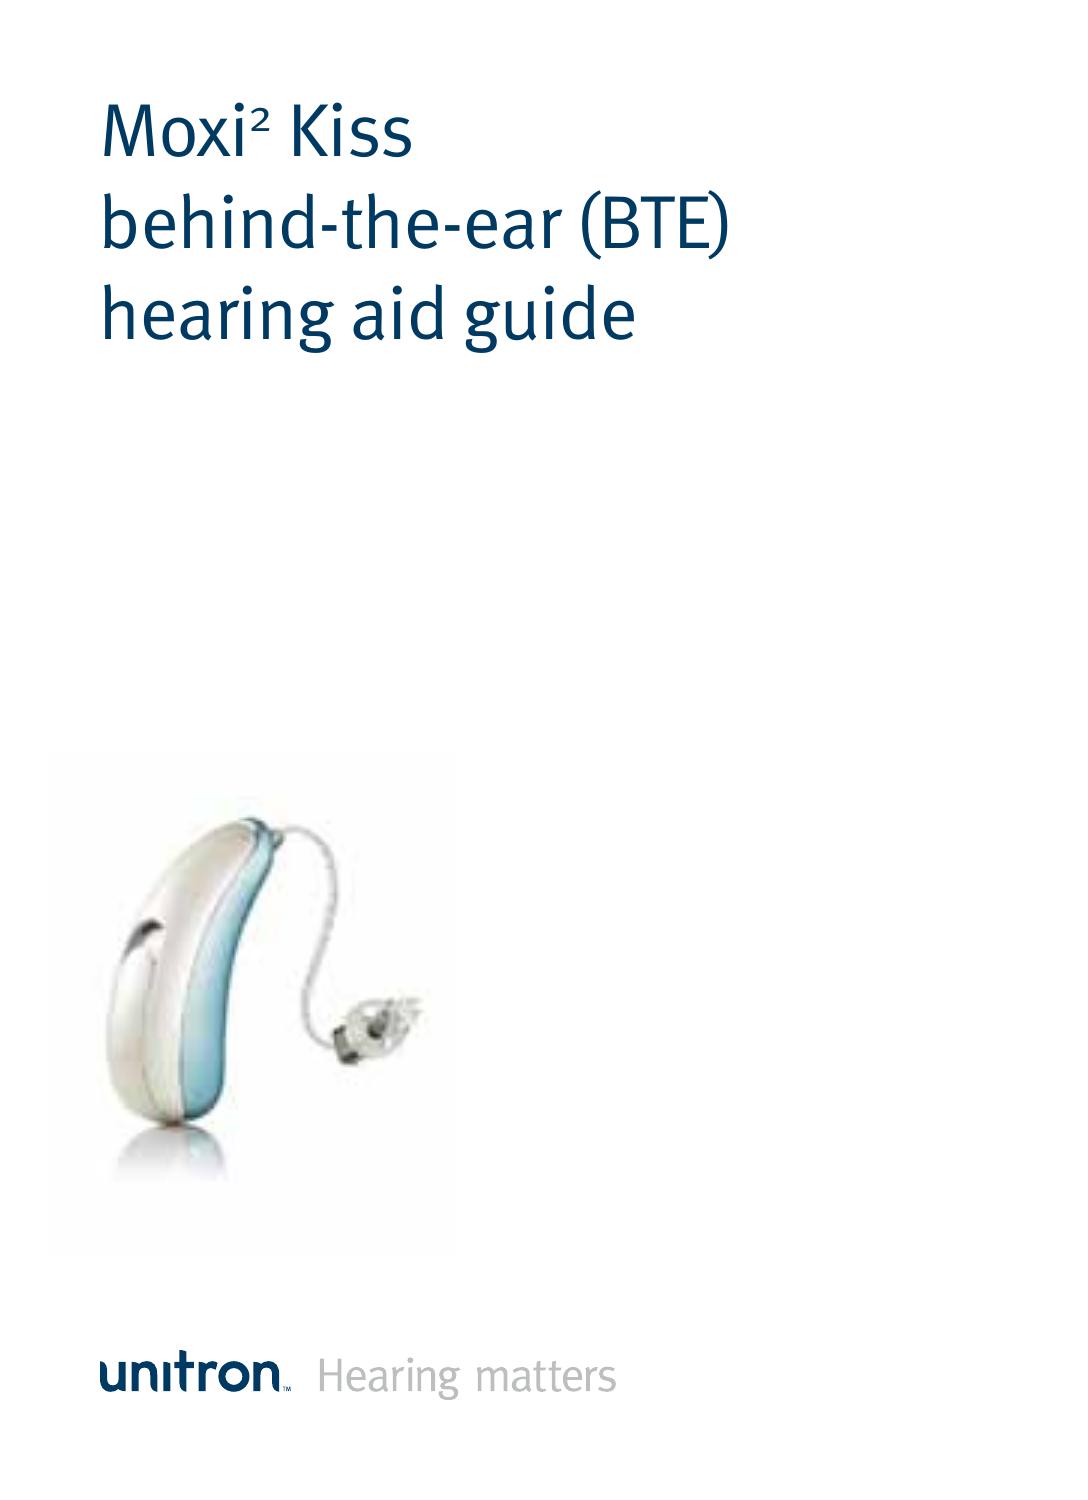 Unitron Hearing Aid Moxi2 Kiss Hearing Aid User Manual